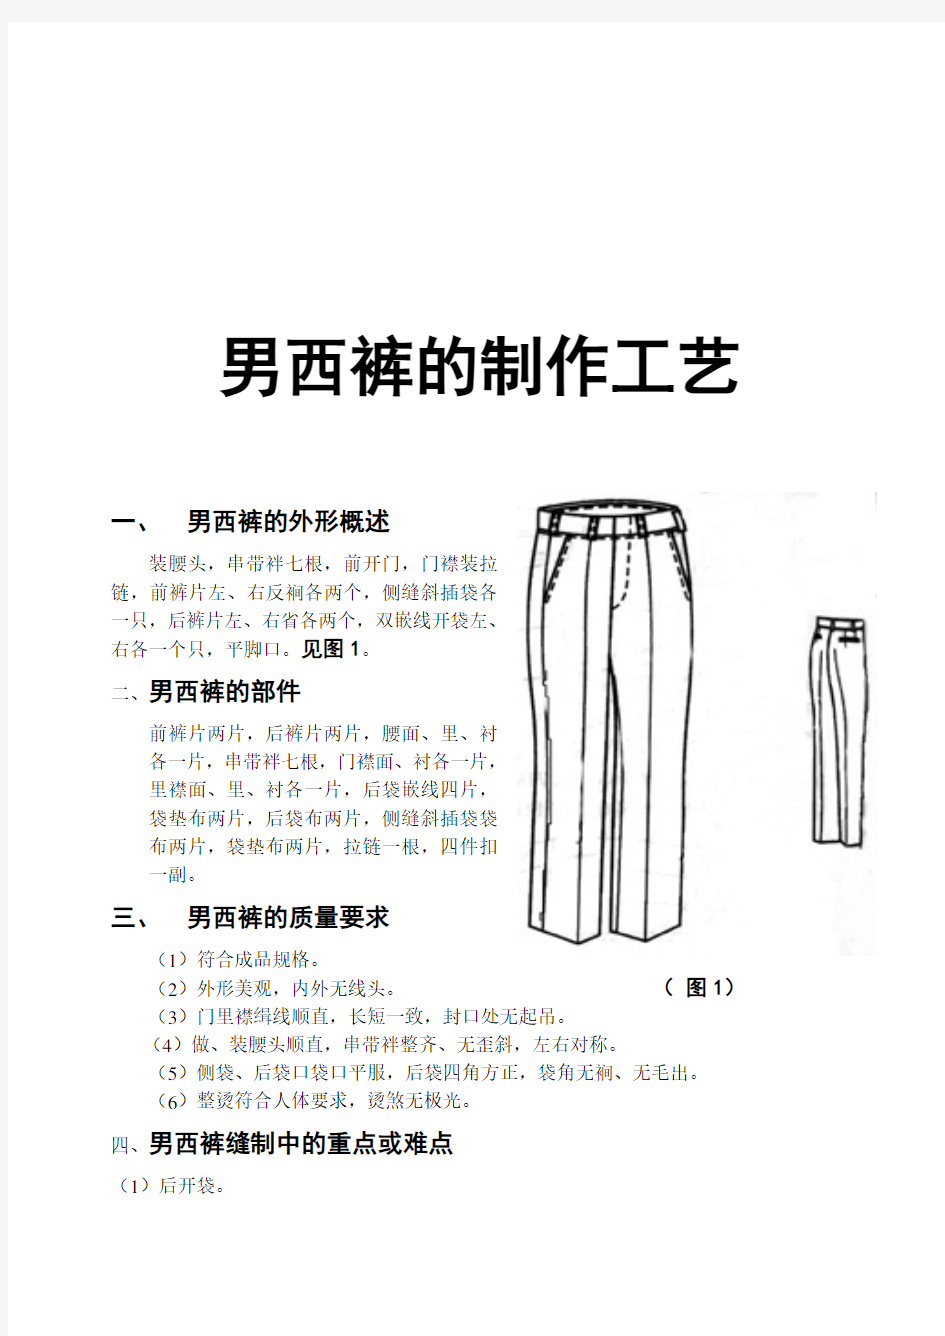 男西裤的制作工艺标准